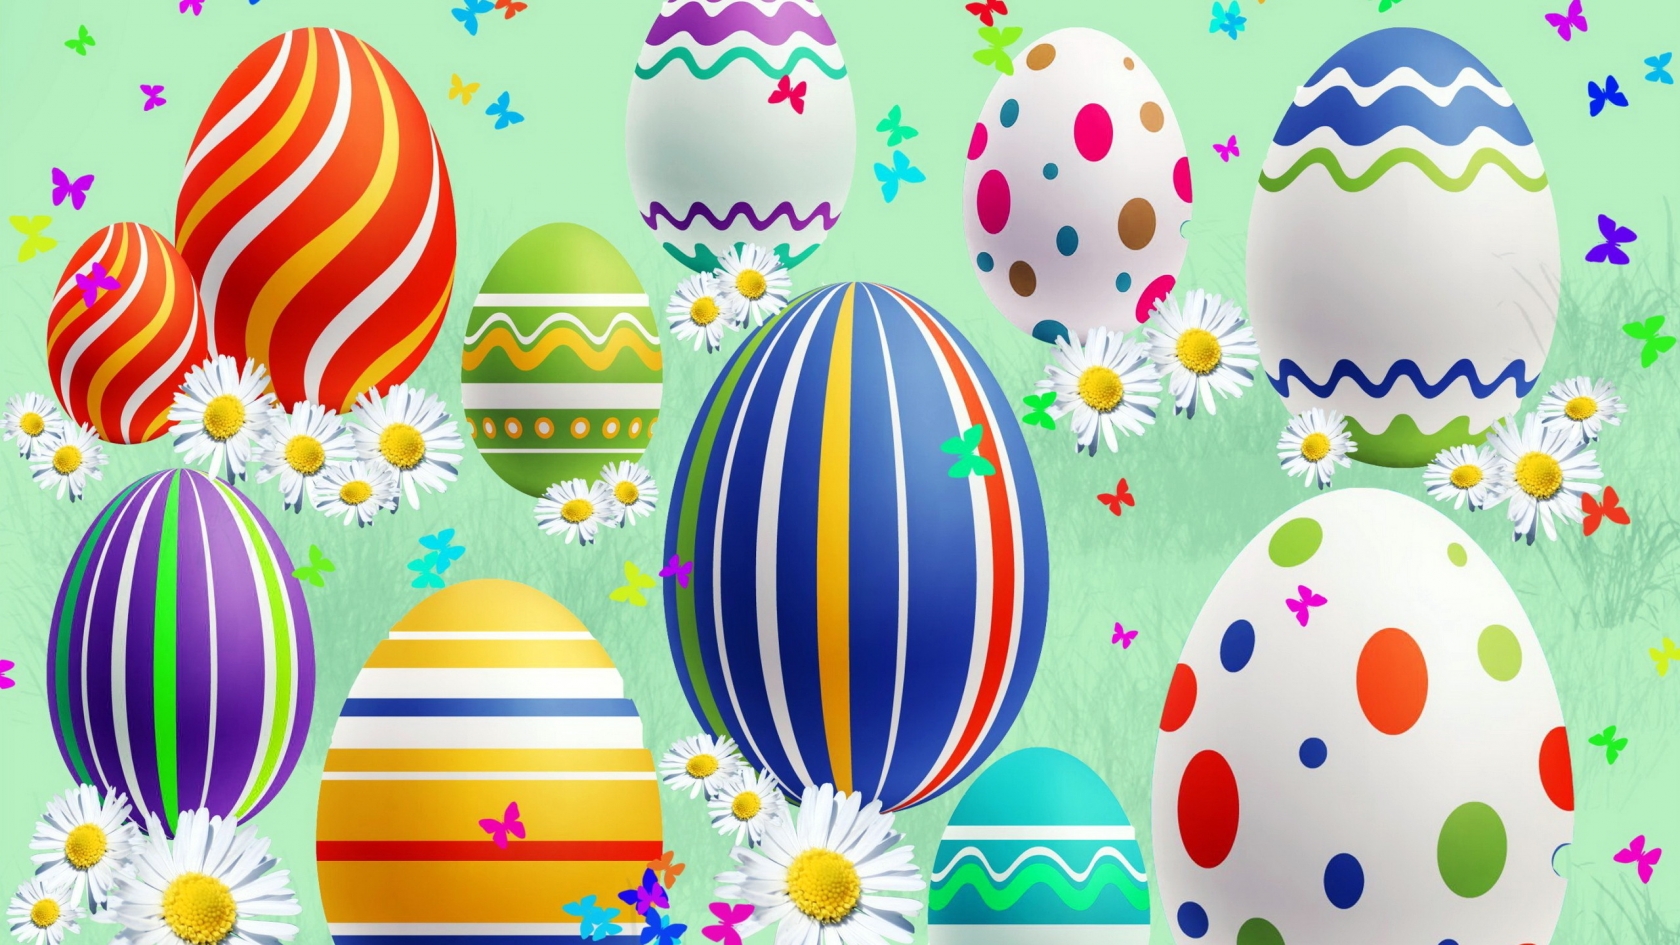 Lovely Easter Eggs for 1680 x 945 HDTV resolution